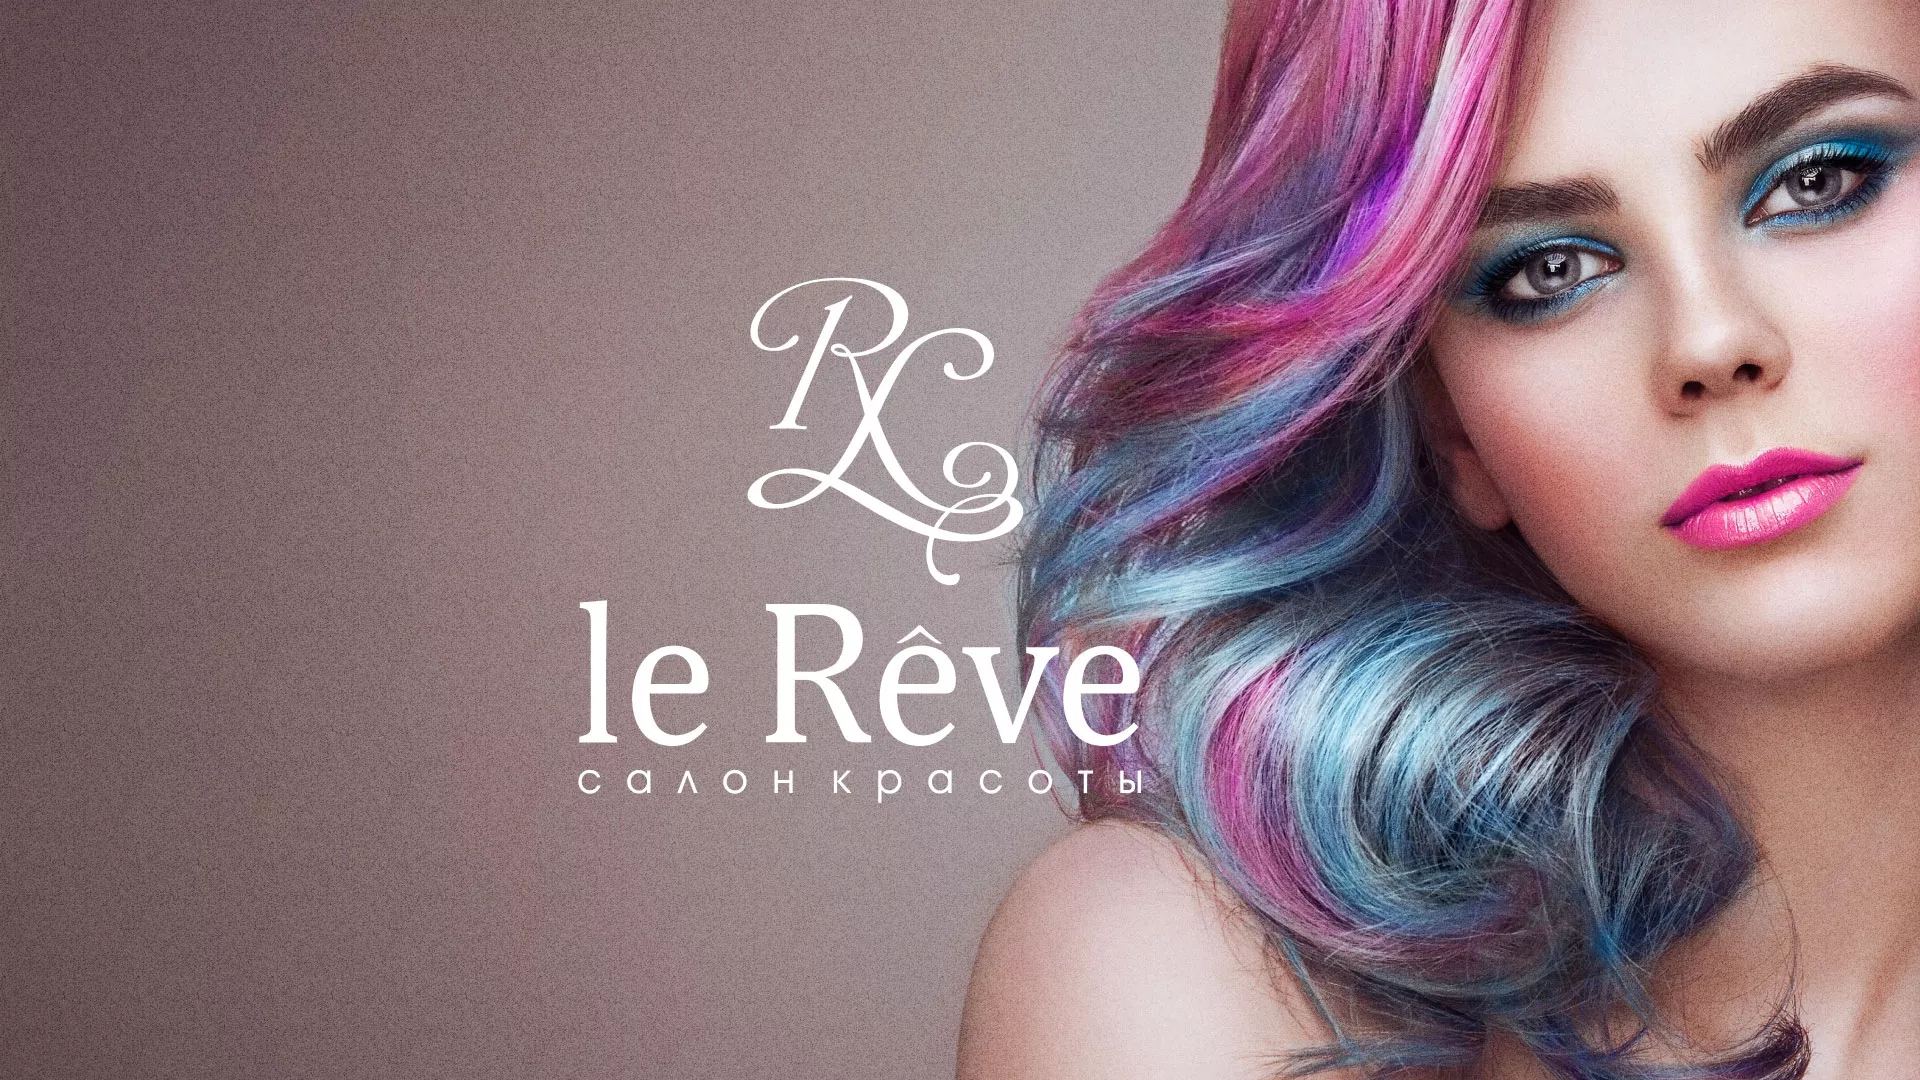 Создание сайта для салона красоты «Le Reve» в Ульяновске